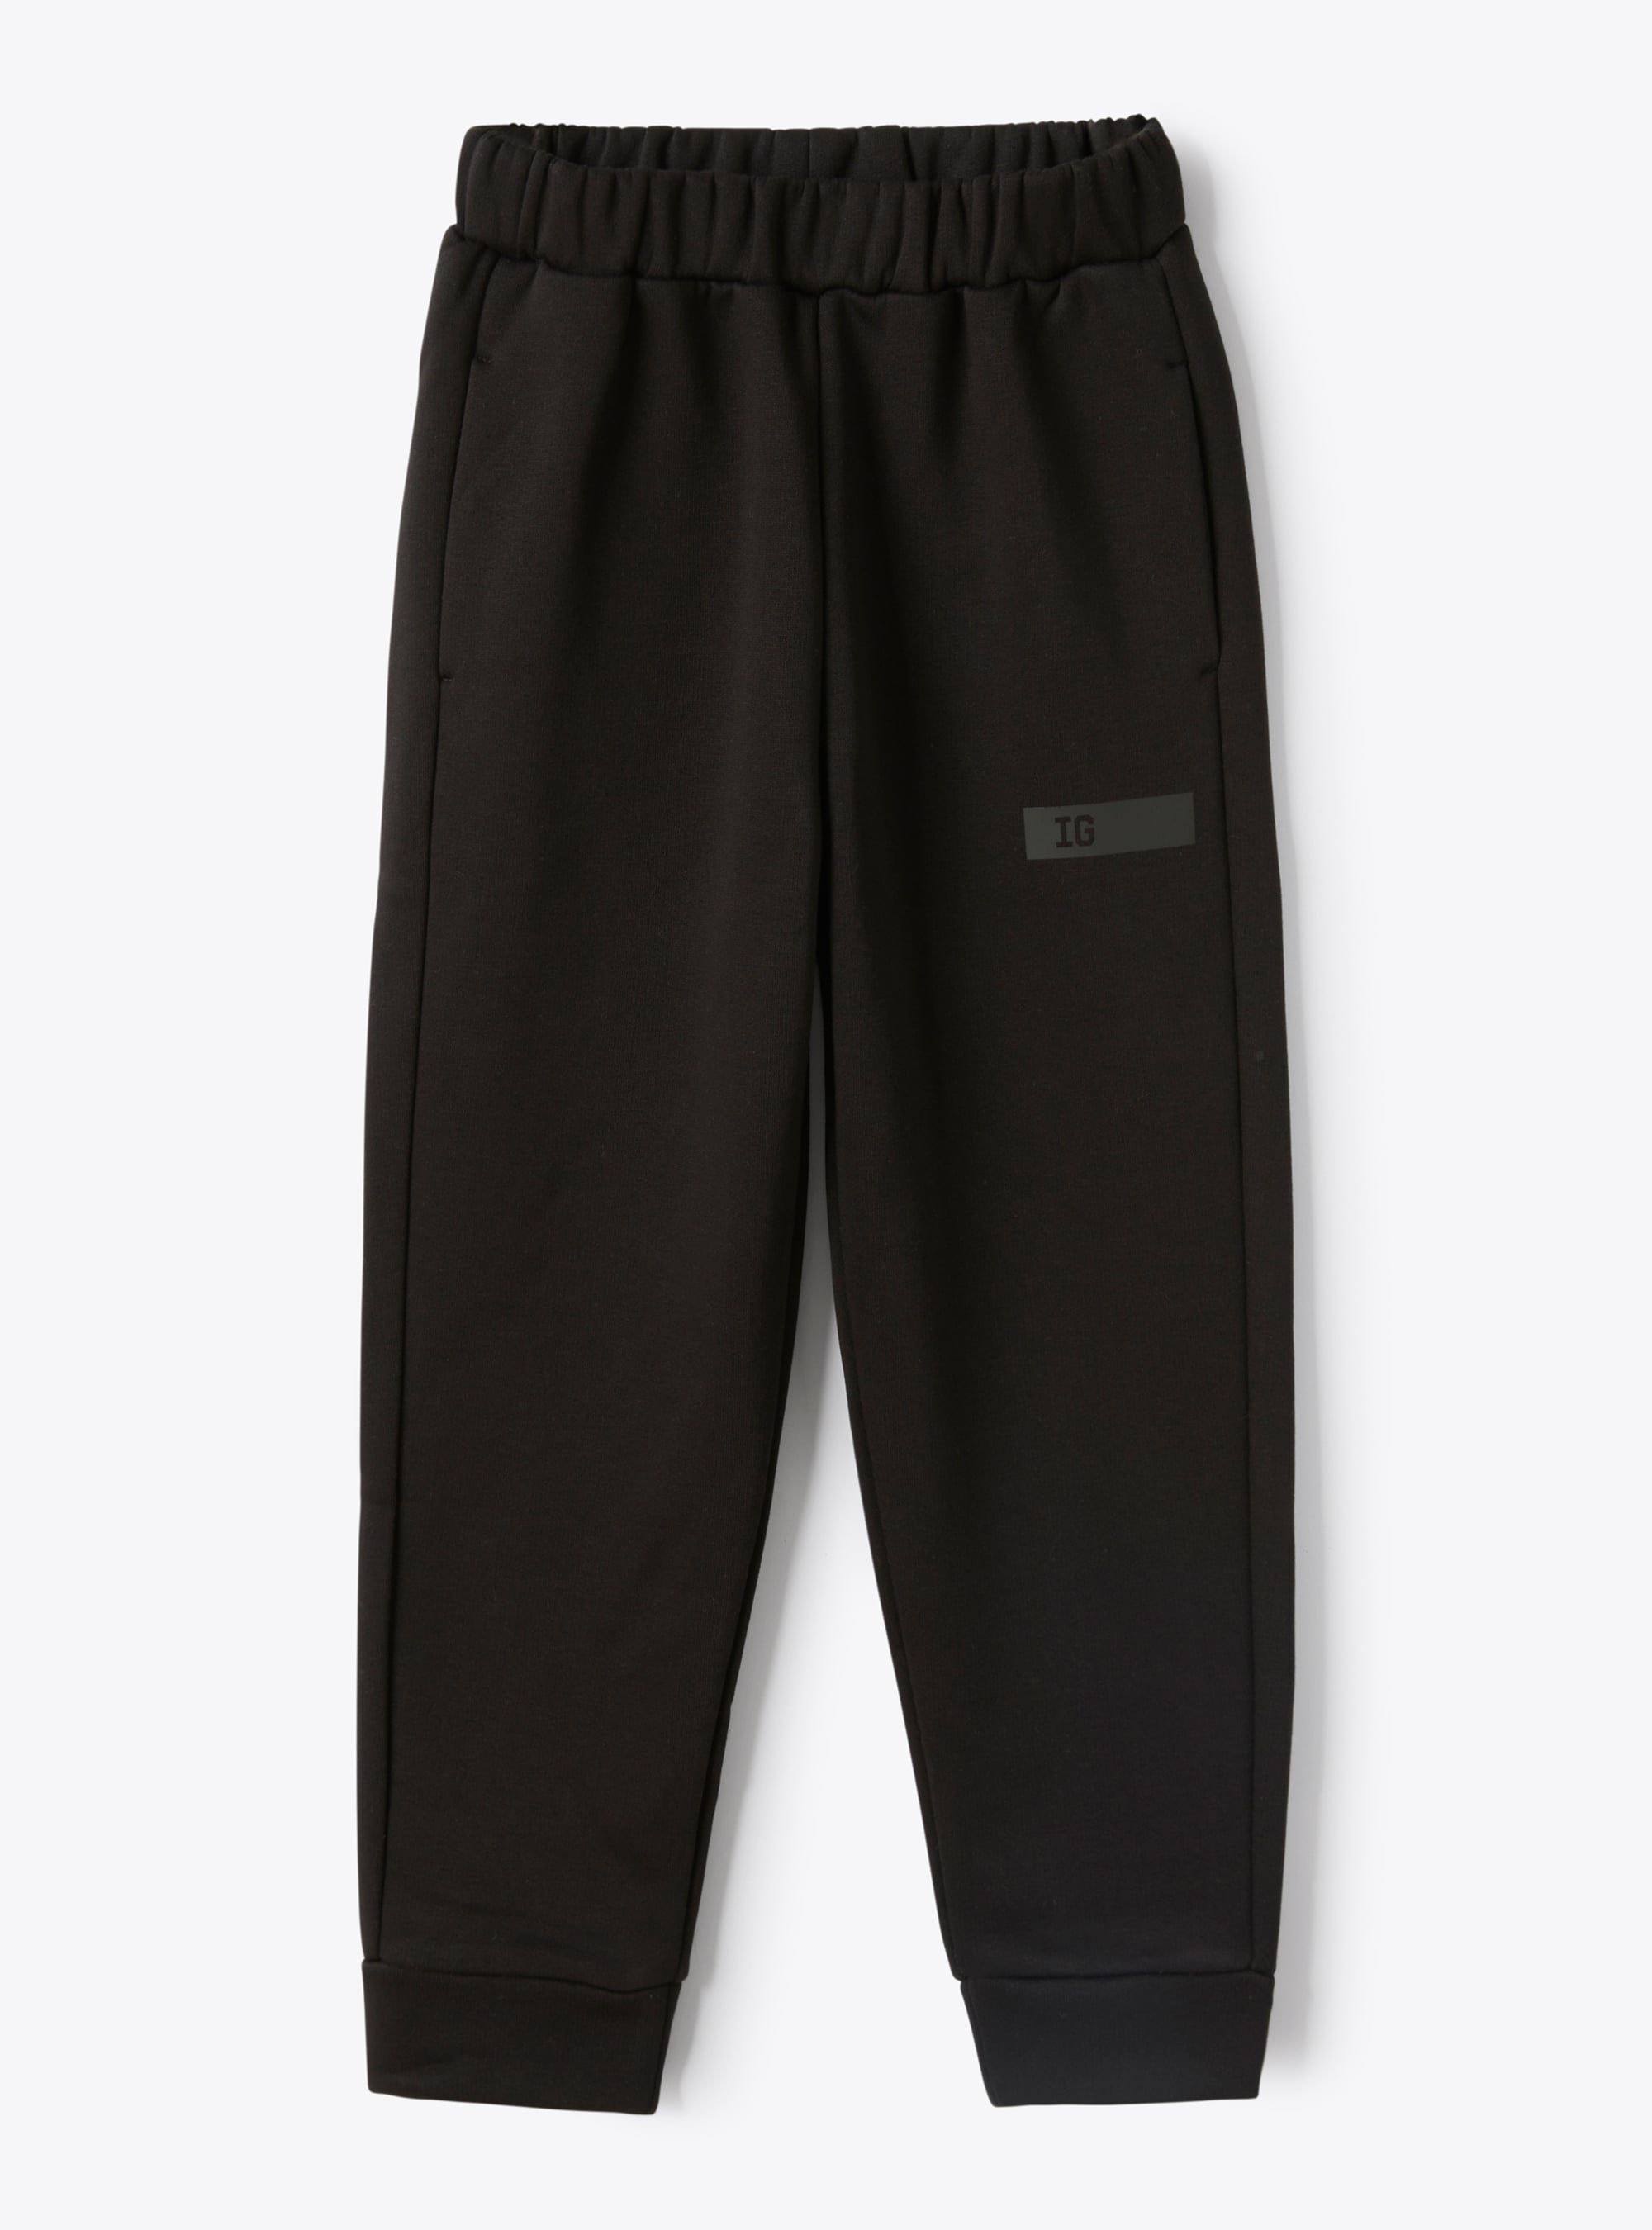 Jogging pants in black hi-tech fleece - Trousers - Il Gufo